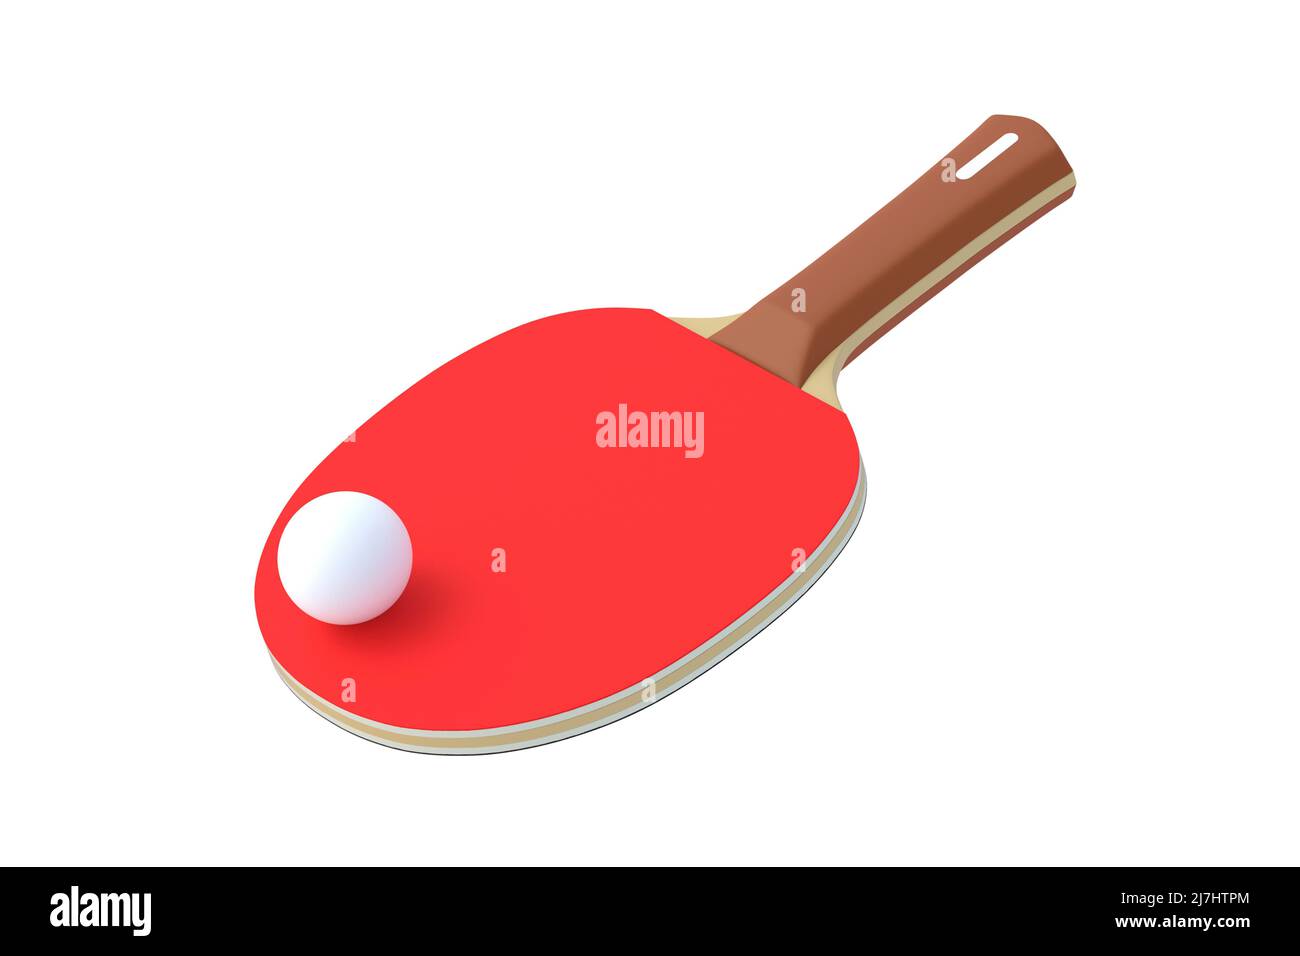 Paddle de ping-pong avec balle isolée sur fond blanc. Jeu de loisirs. Équipement de sport. Concurrence internationale. Tennis de table. 3d rendu Banque D'Images